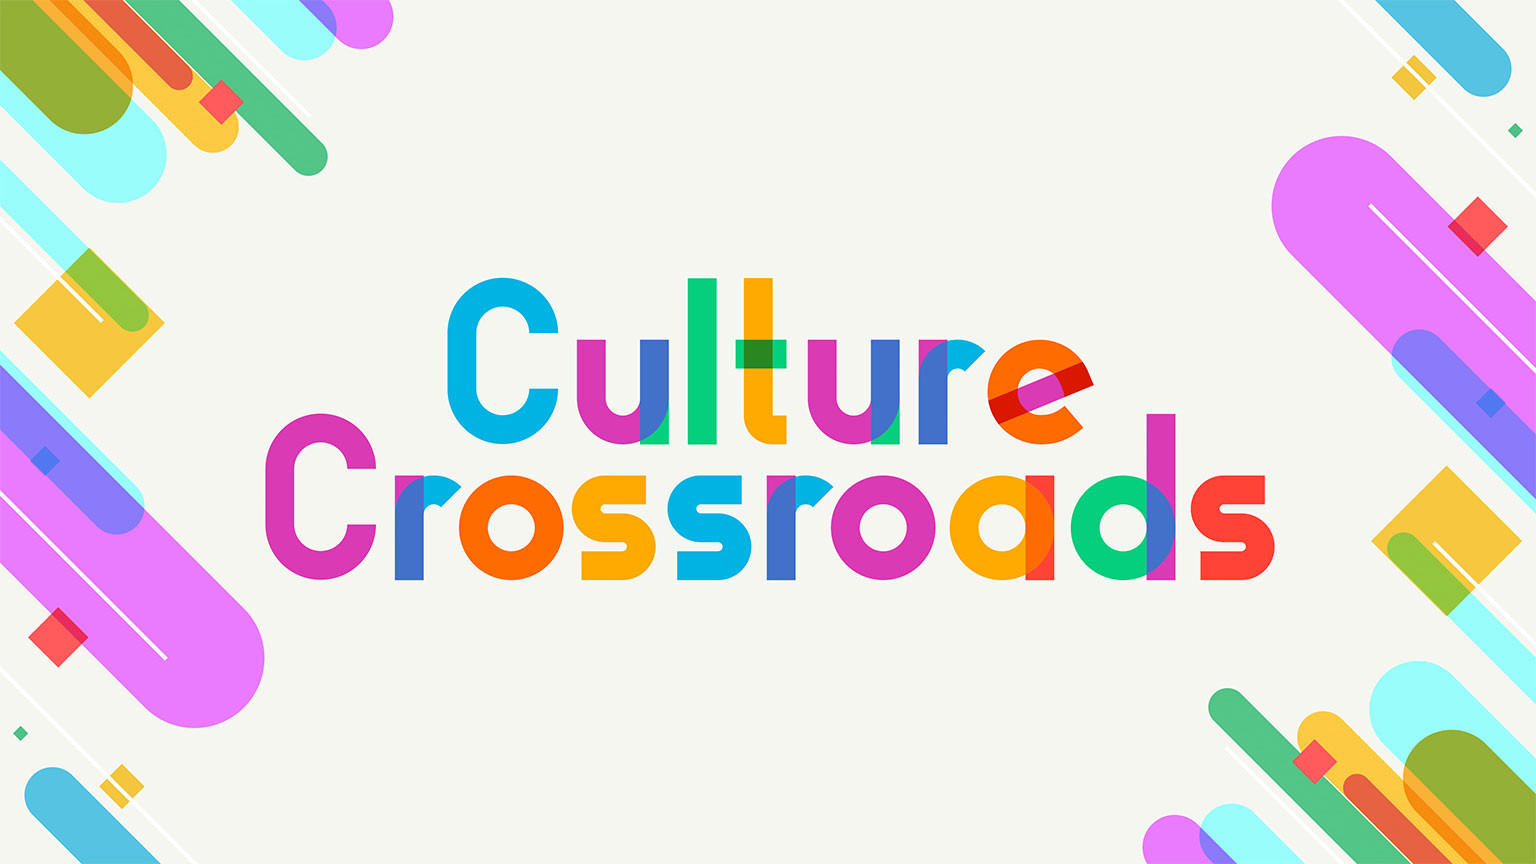 ယှက်နွှယ်နေသော ယဉ်ကျေးမှုများ
Culture Crossroads